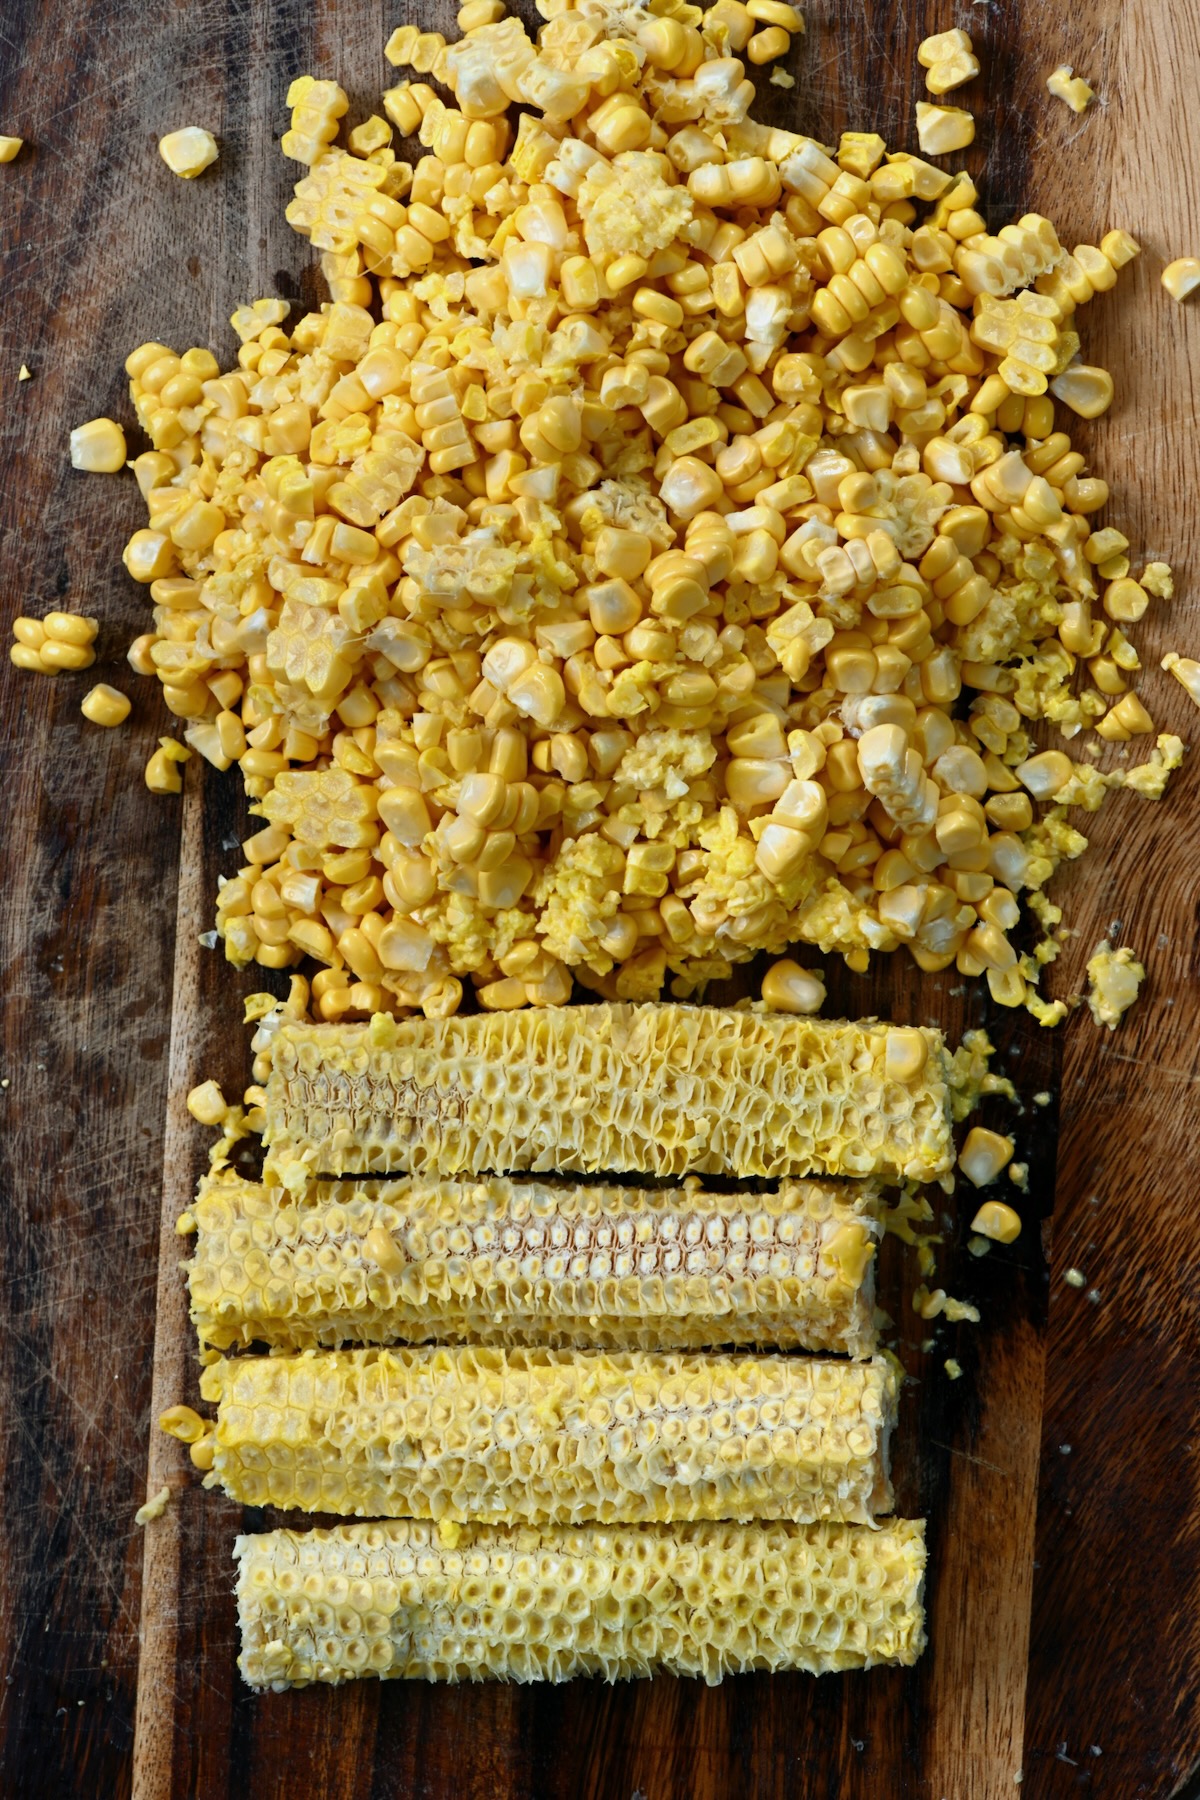 Corn kernels cut off from the cob